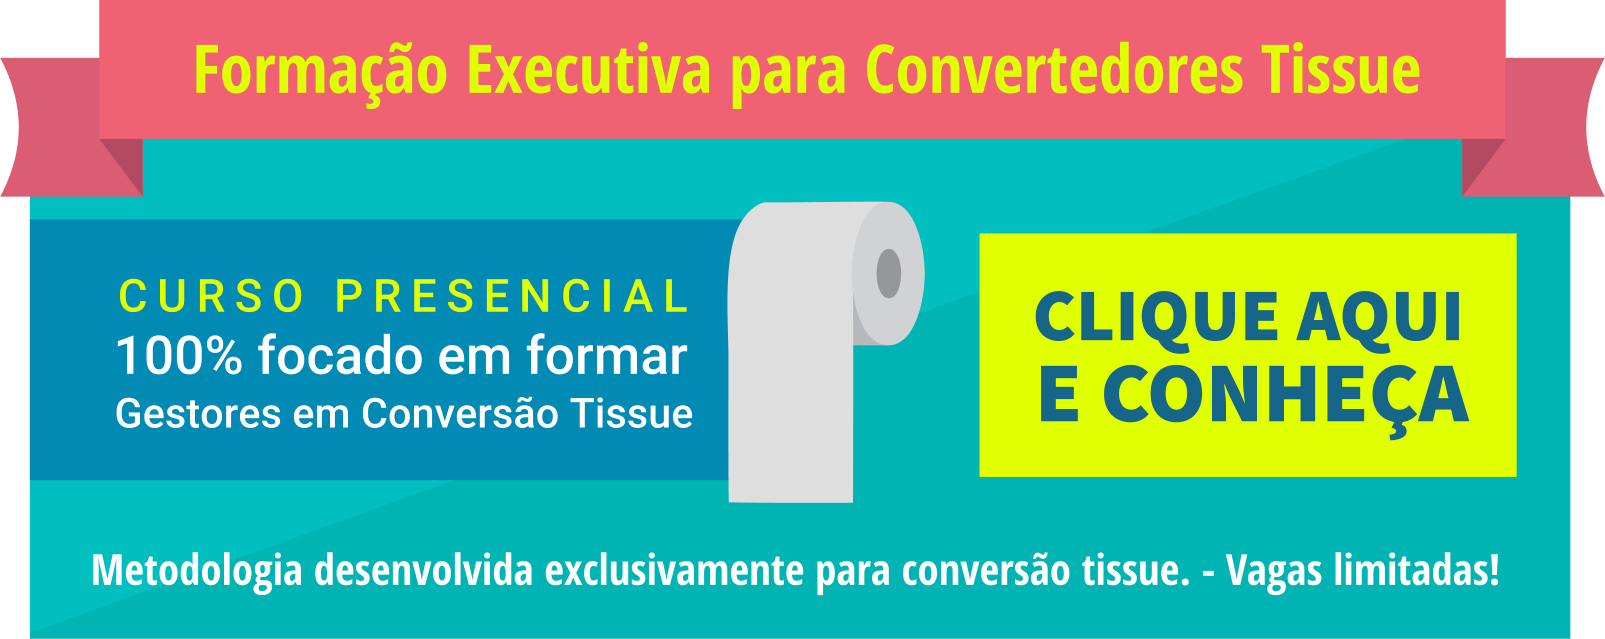 banner-curso-formacao-executiva-convertedores-tissue